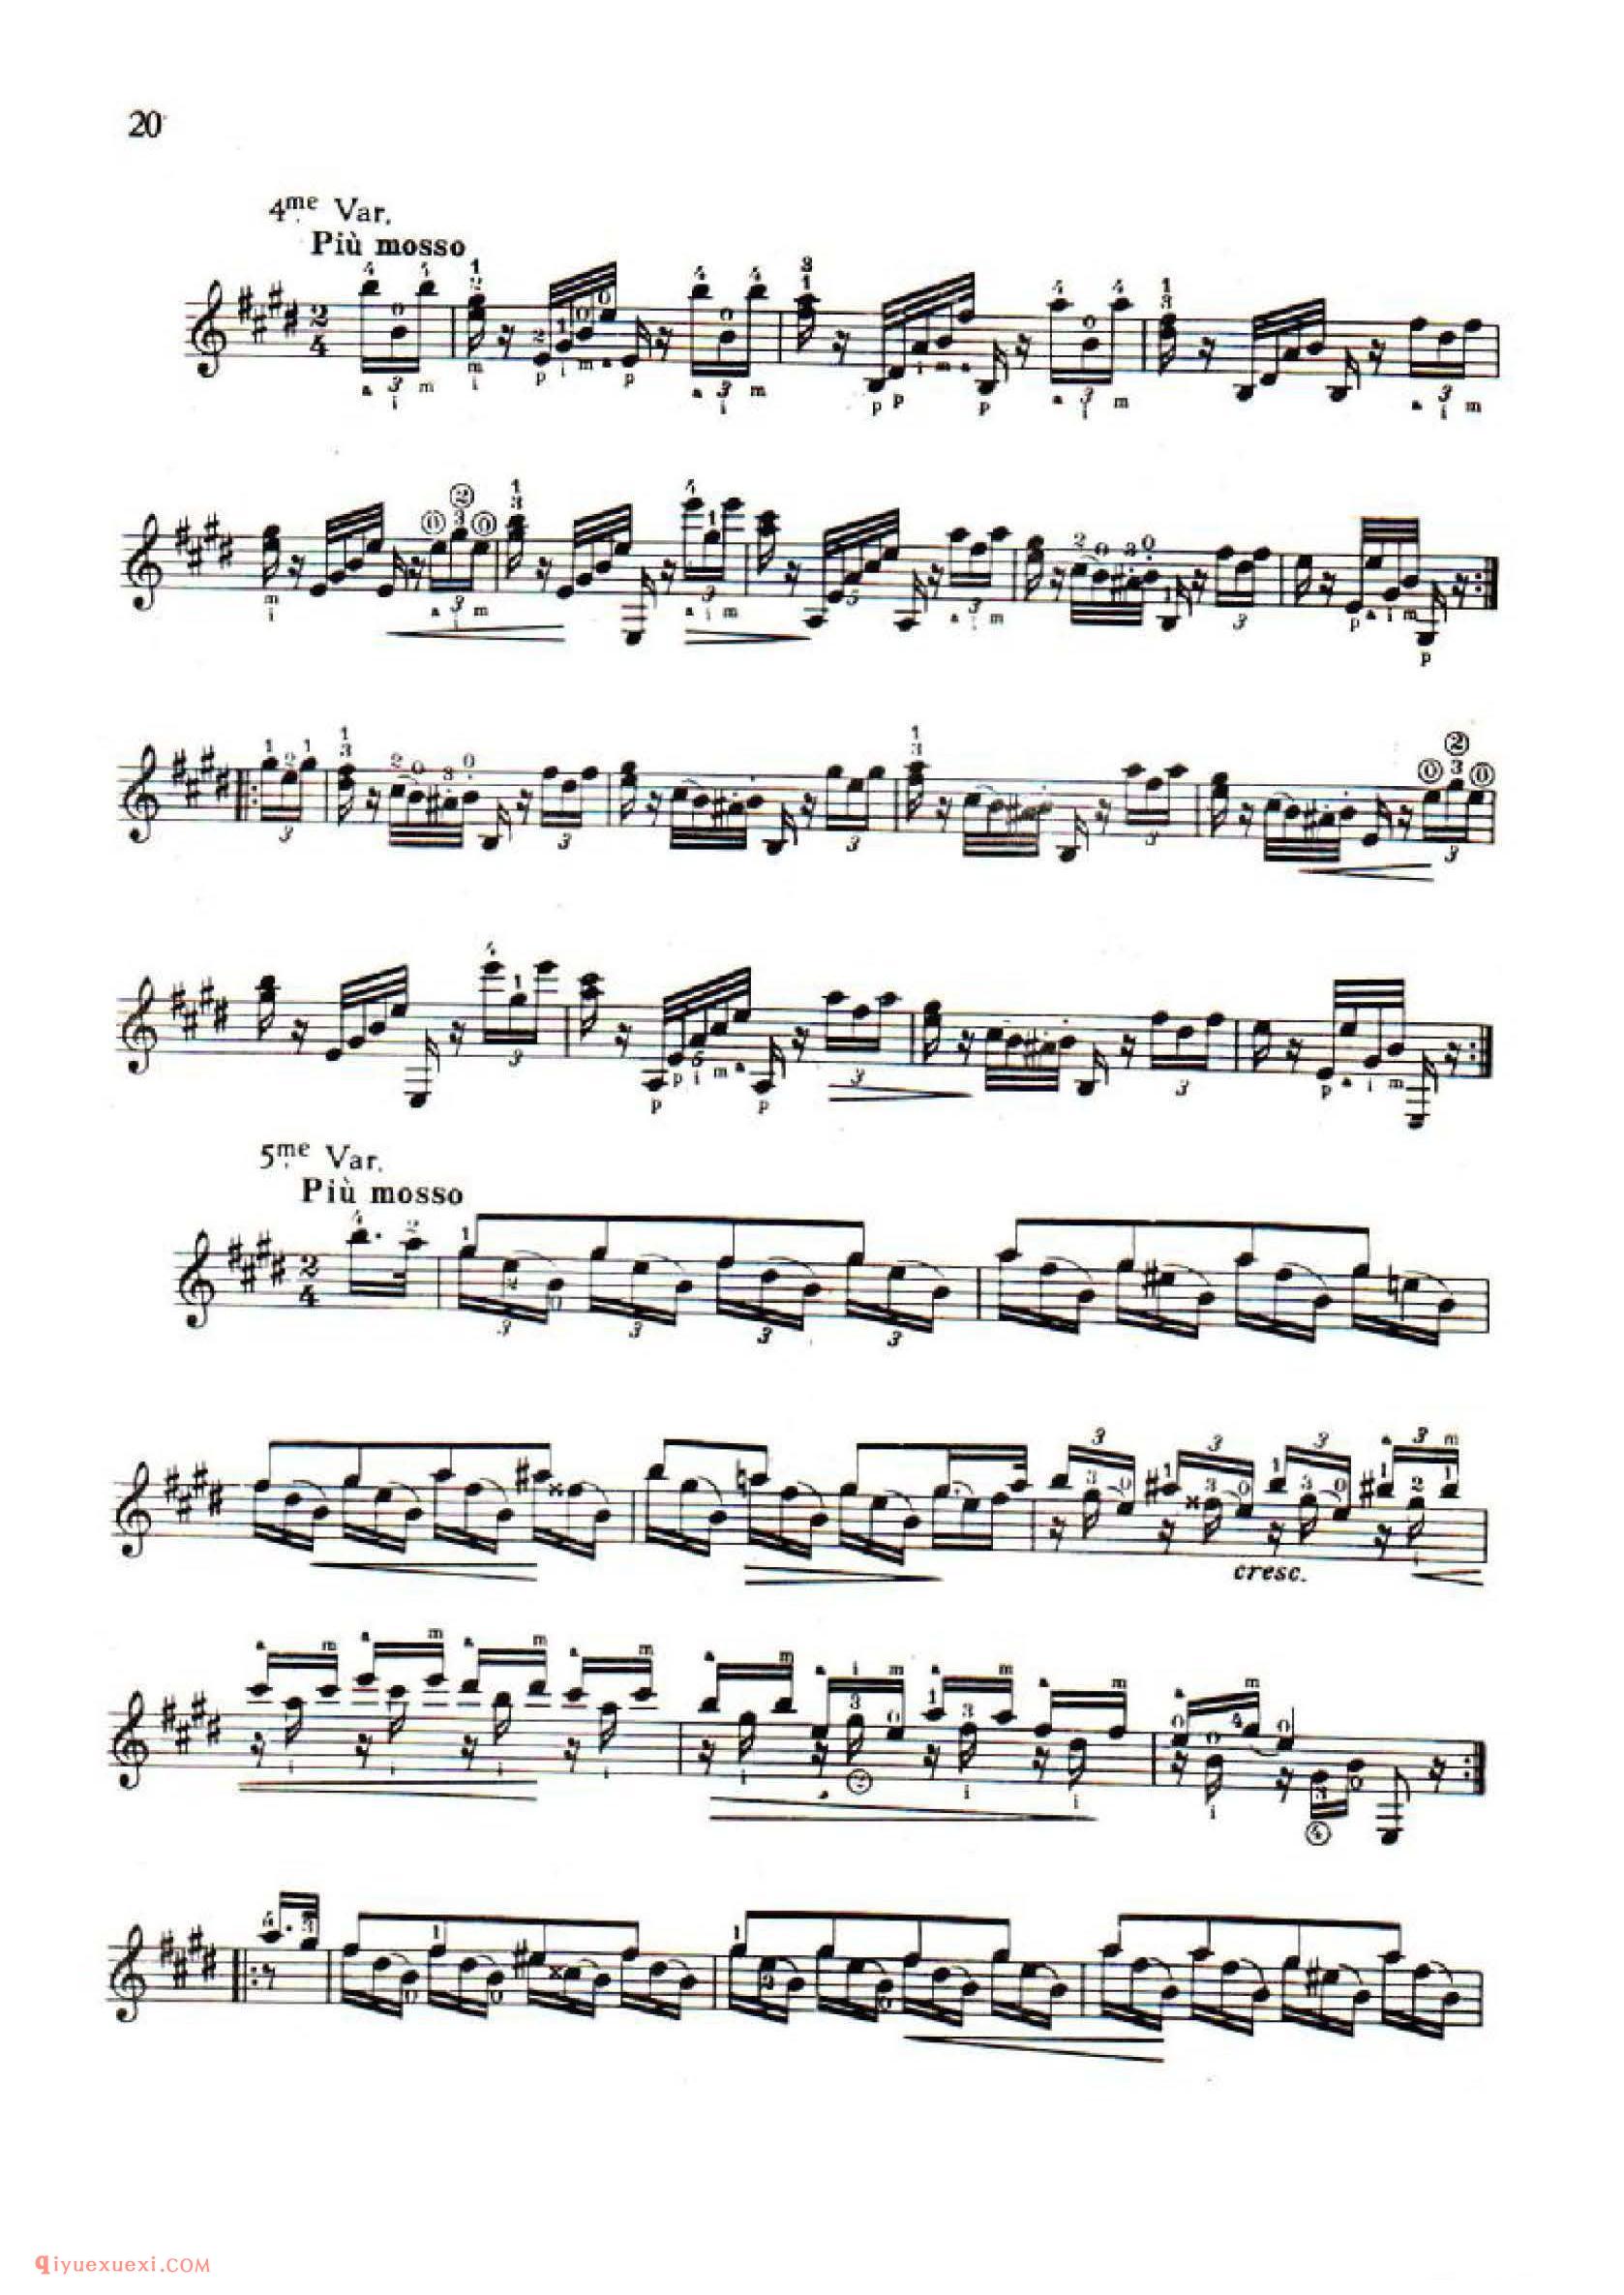 莫扎特魔笛主题与变奏[西班牙]索尔曲_塞戈维亚订指法_吉他大师名曲五线谱